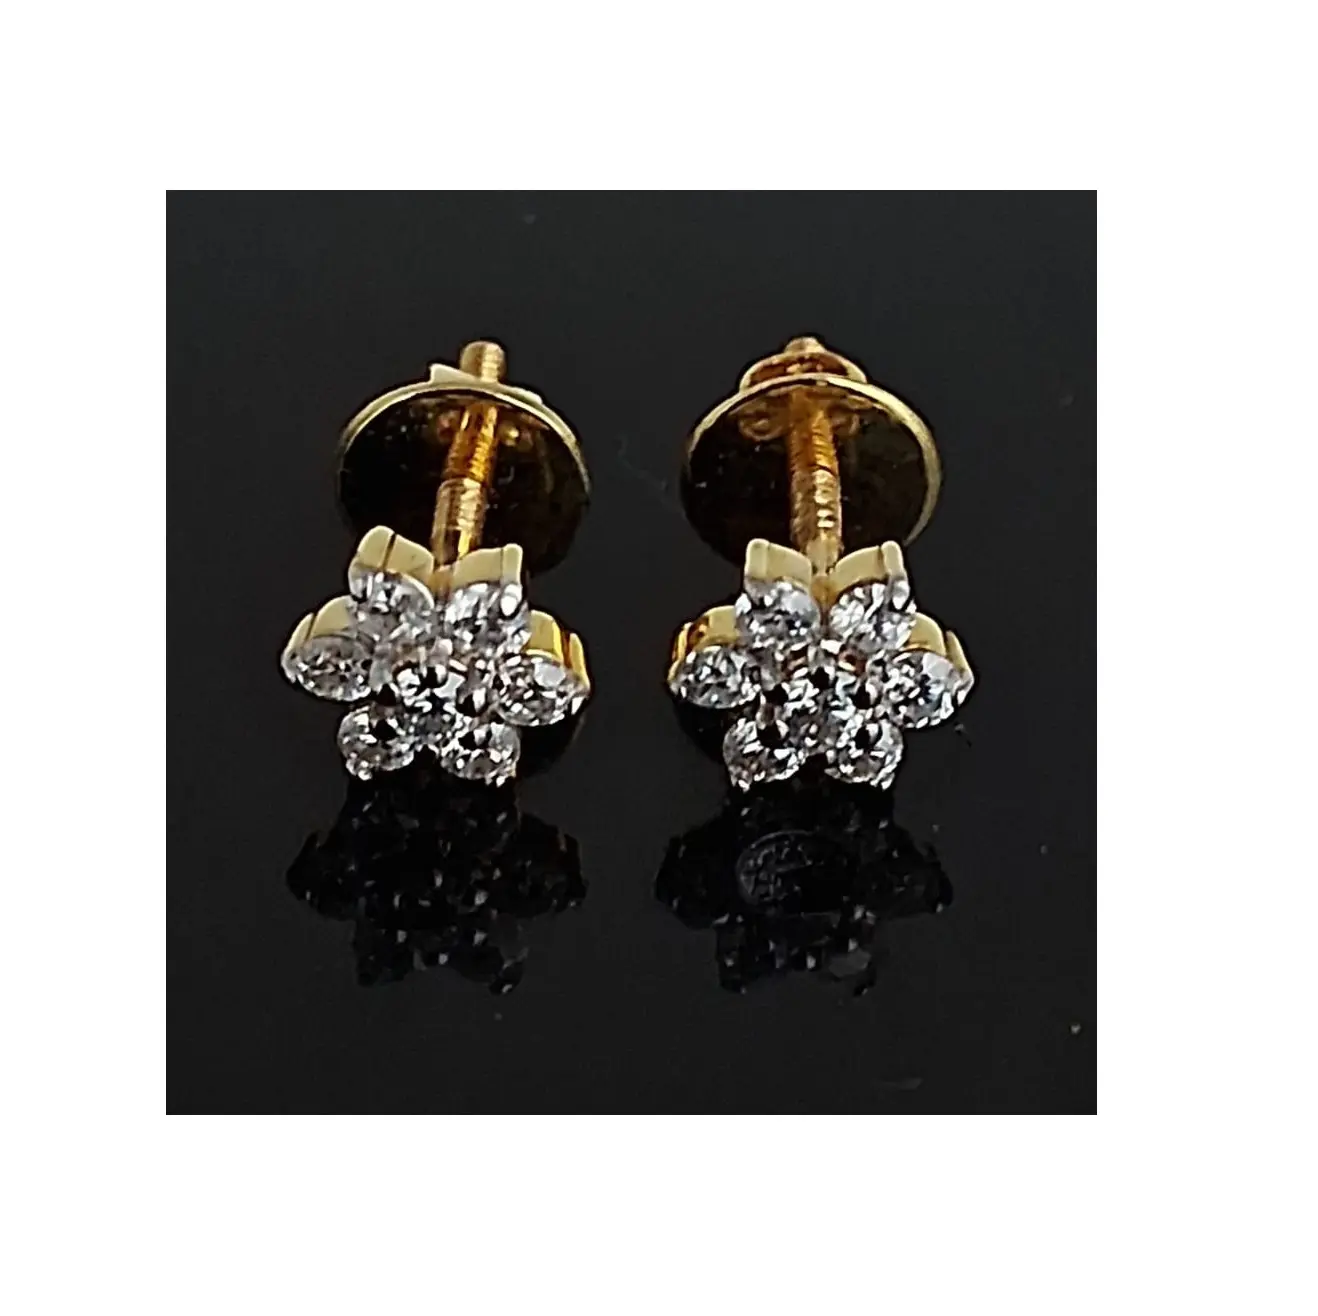 절묘한 골드 플라워 쥬얼리 디자인 IGI 인증 14KT 18KT 골드 배 컷 랩 여성용 7 개의 발톱이있는 다이아몬드 귀걸이